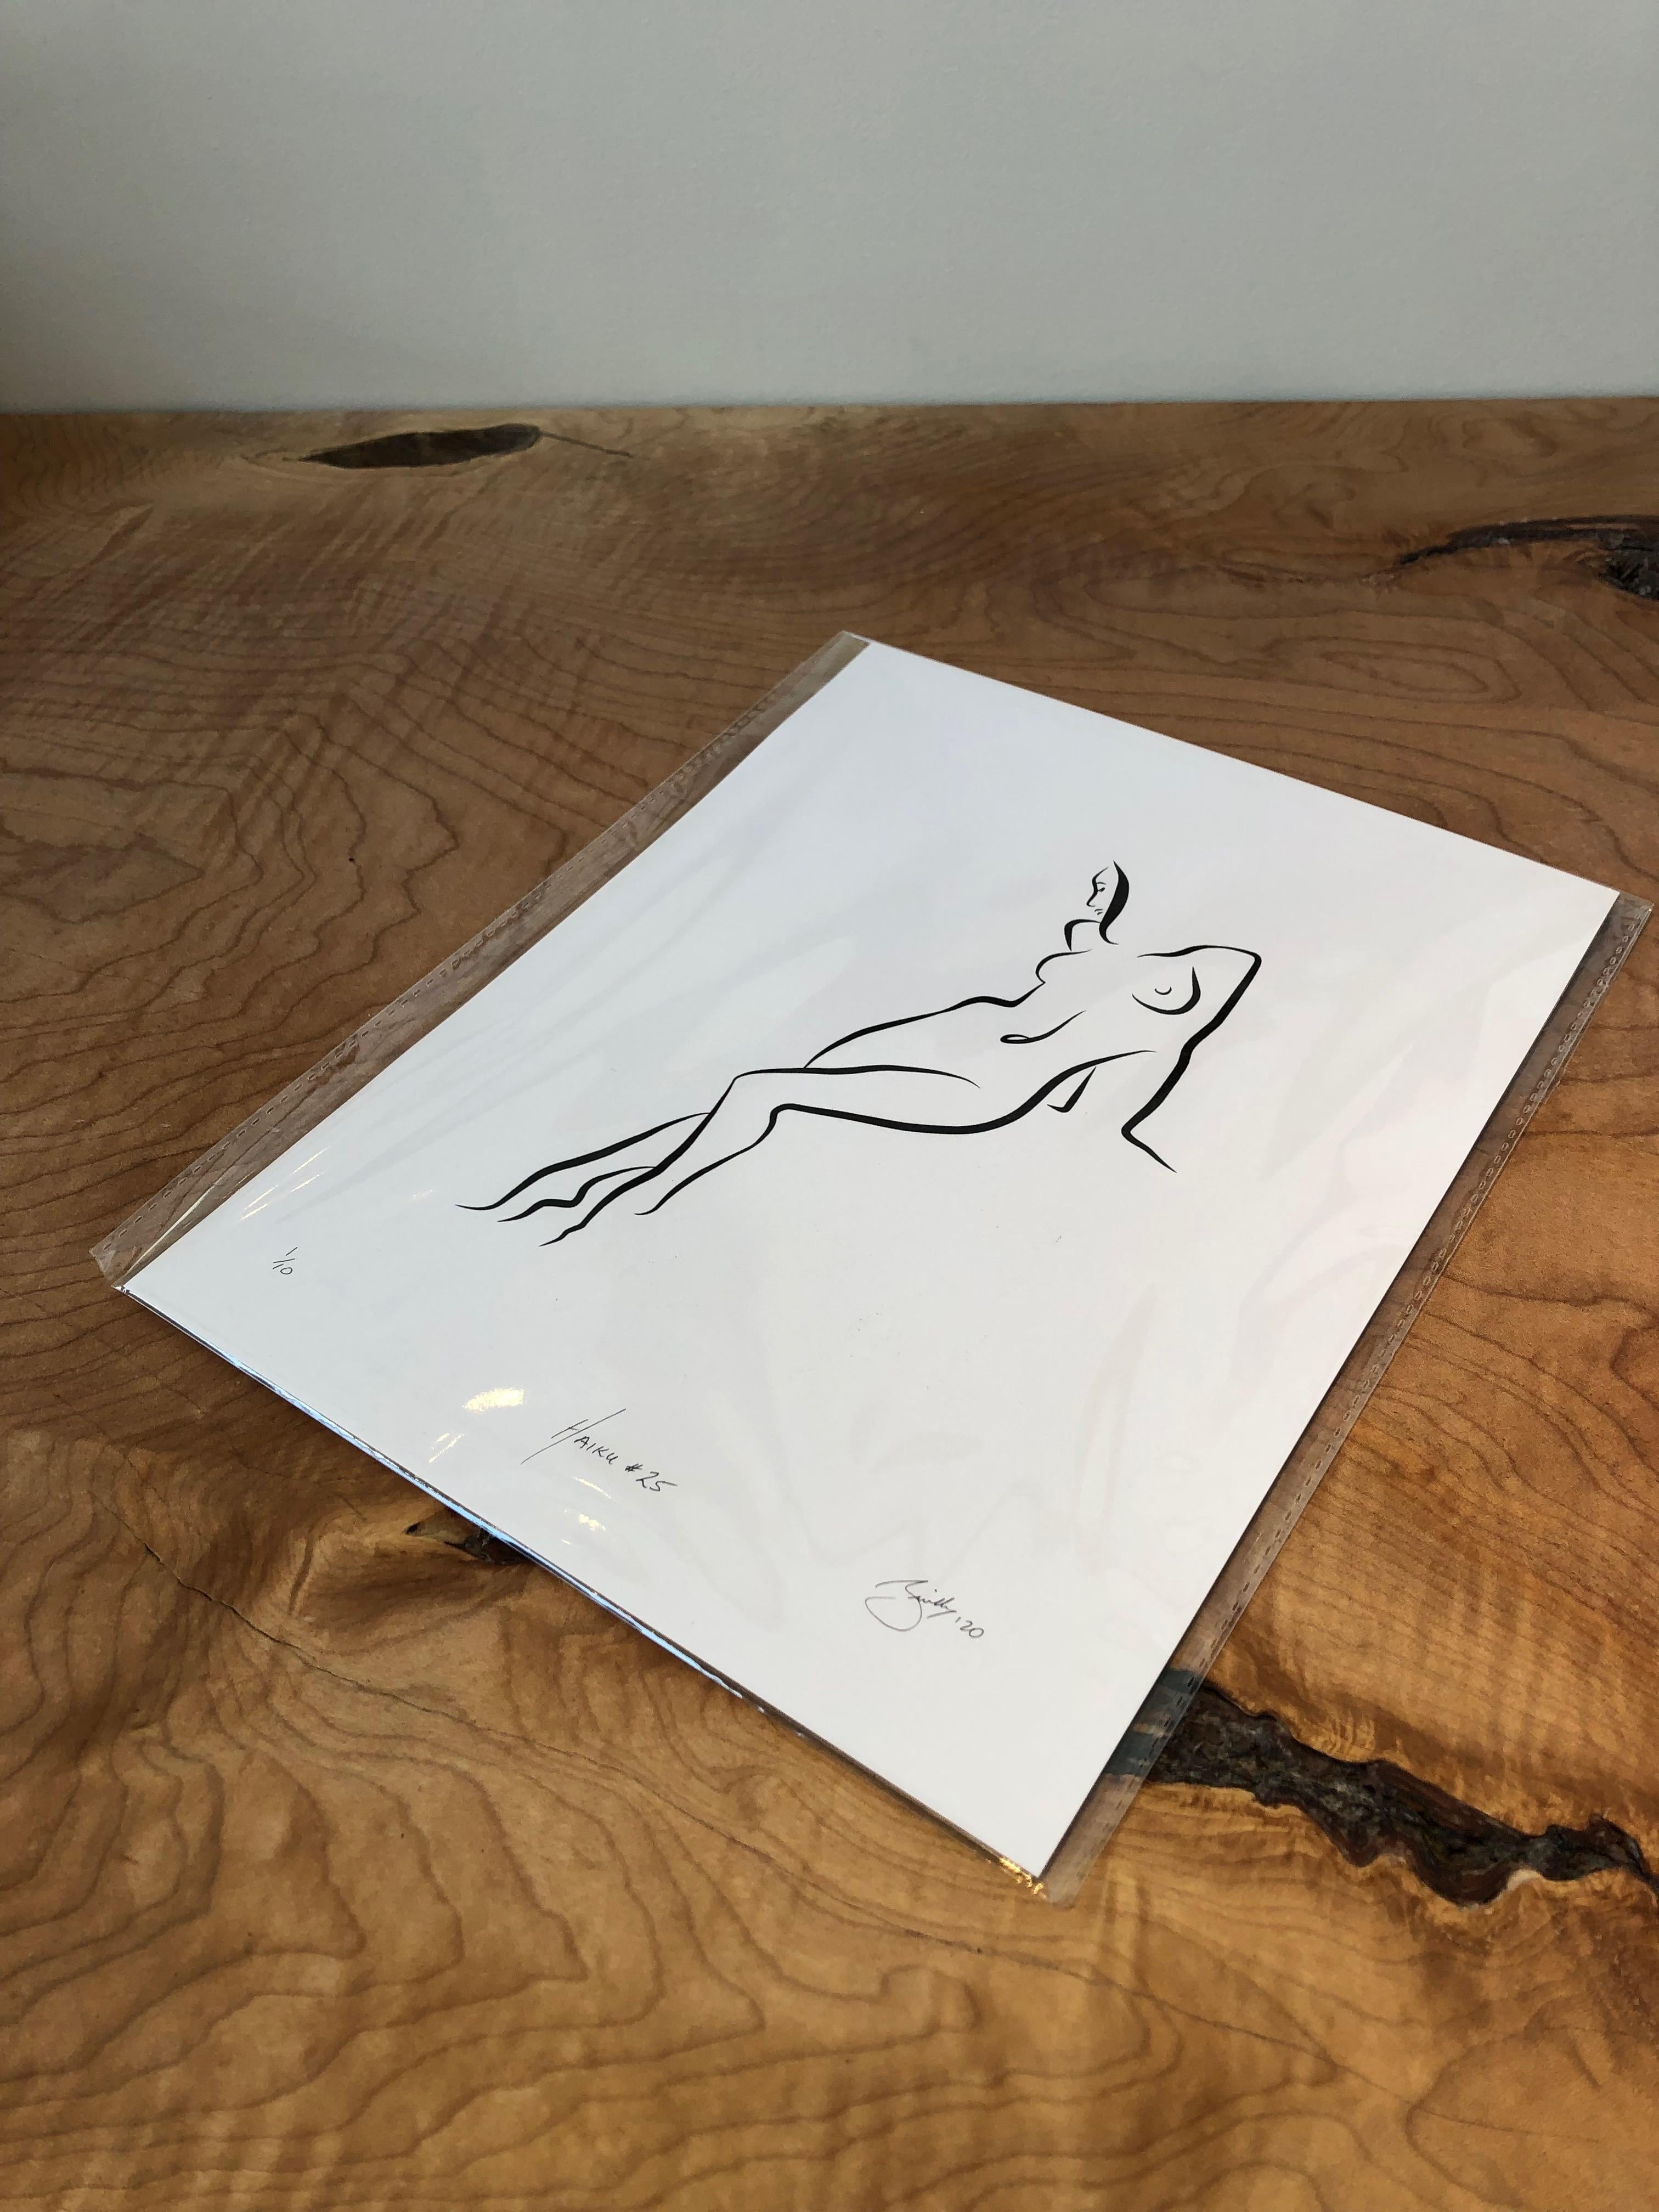 Haiku #25, 1/50 - Digital Vector Drawing Leaning Female Nude Woman Figure - Print by Michael Binkley